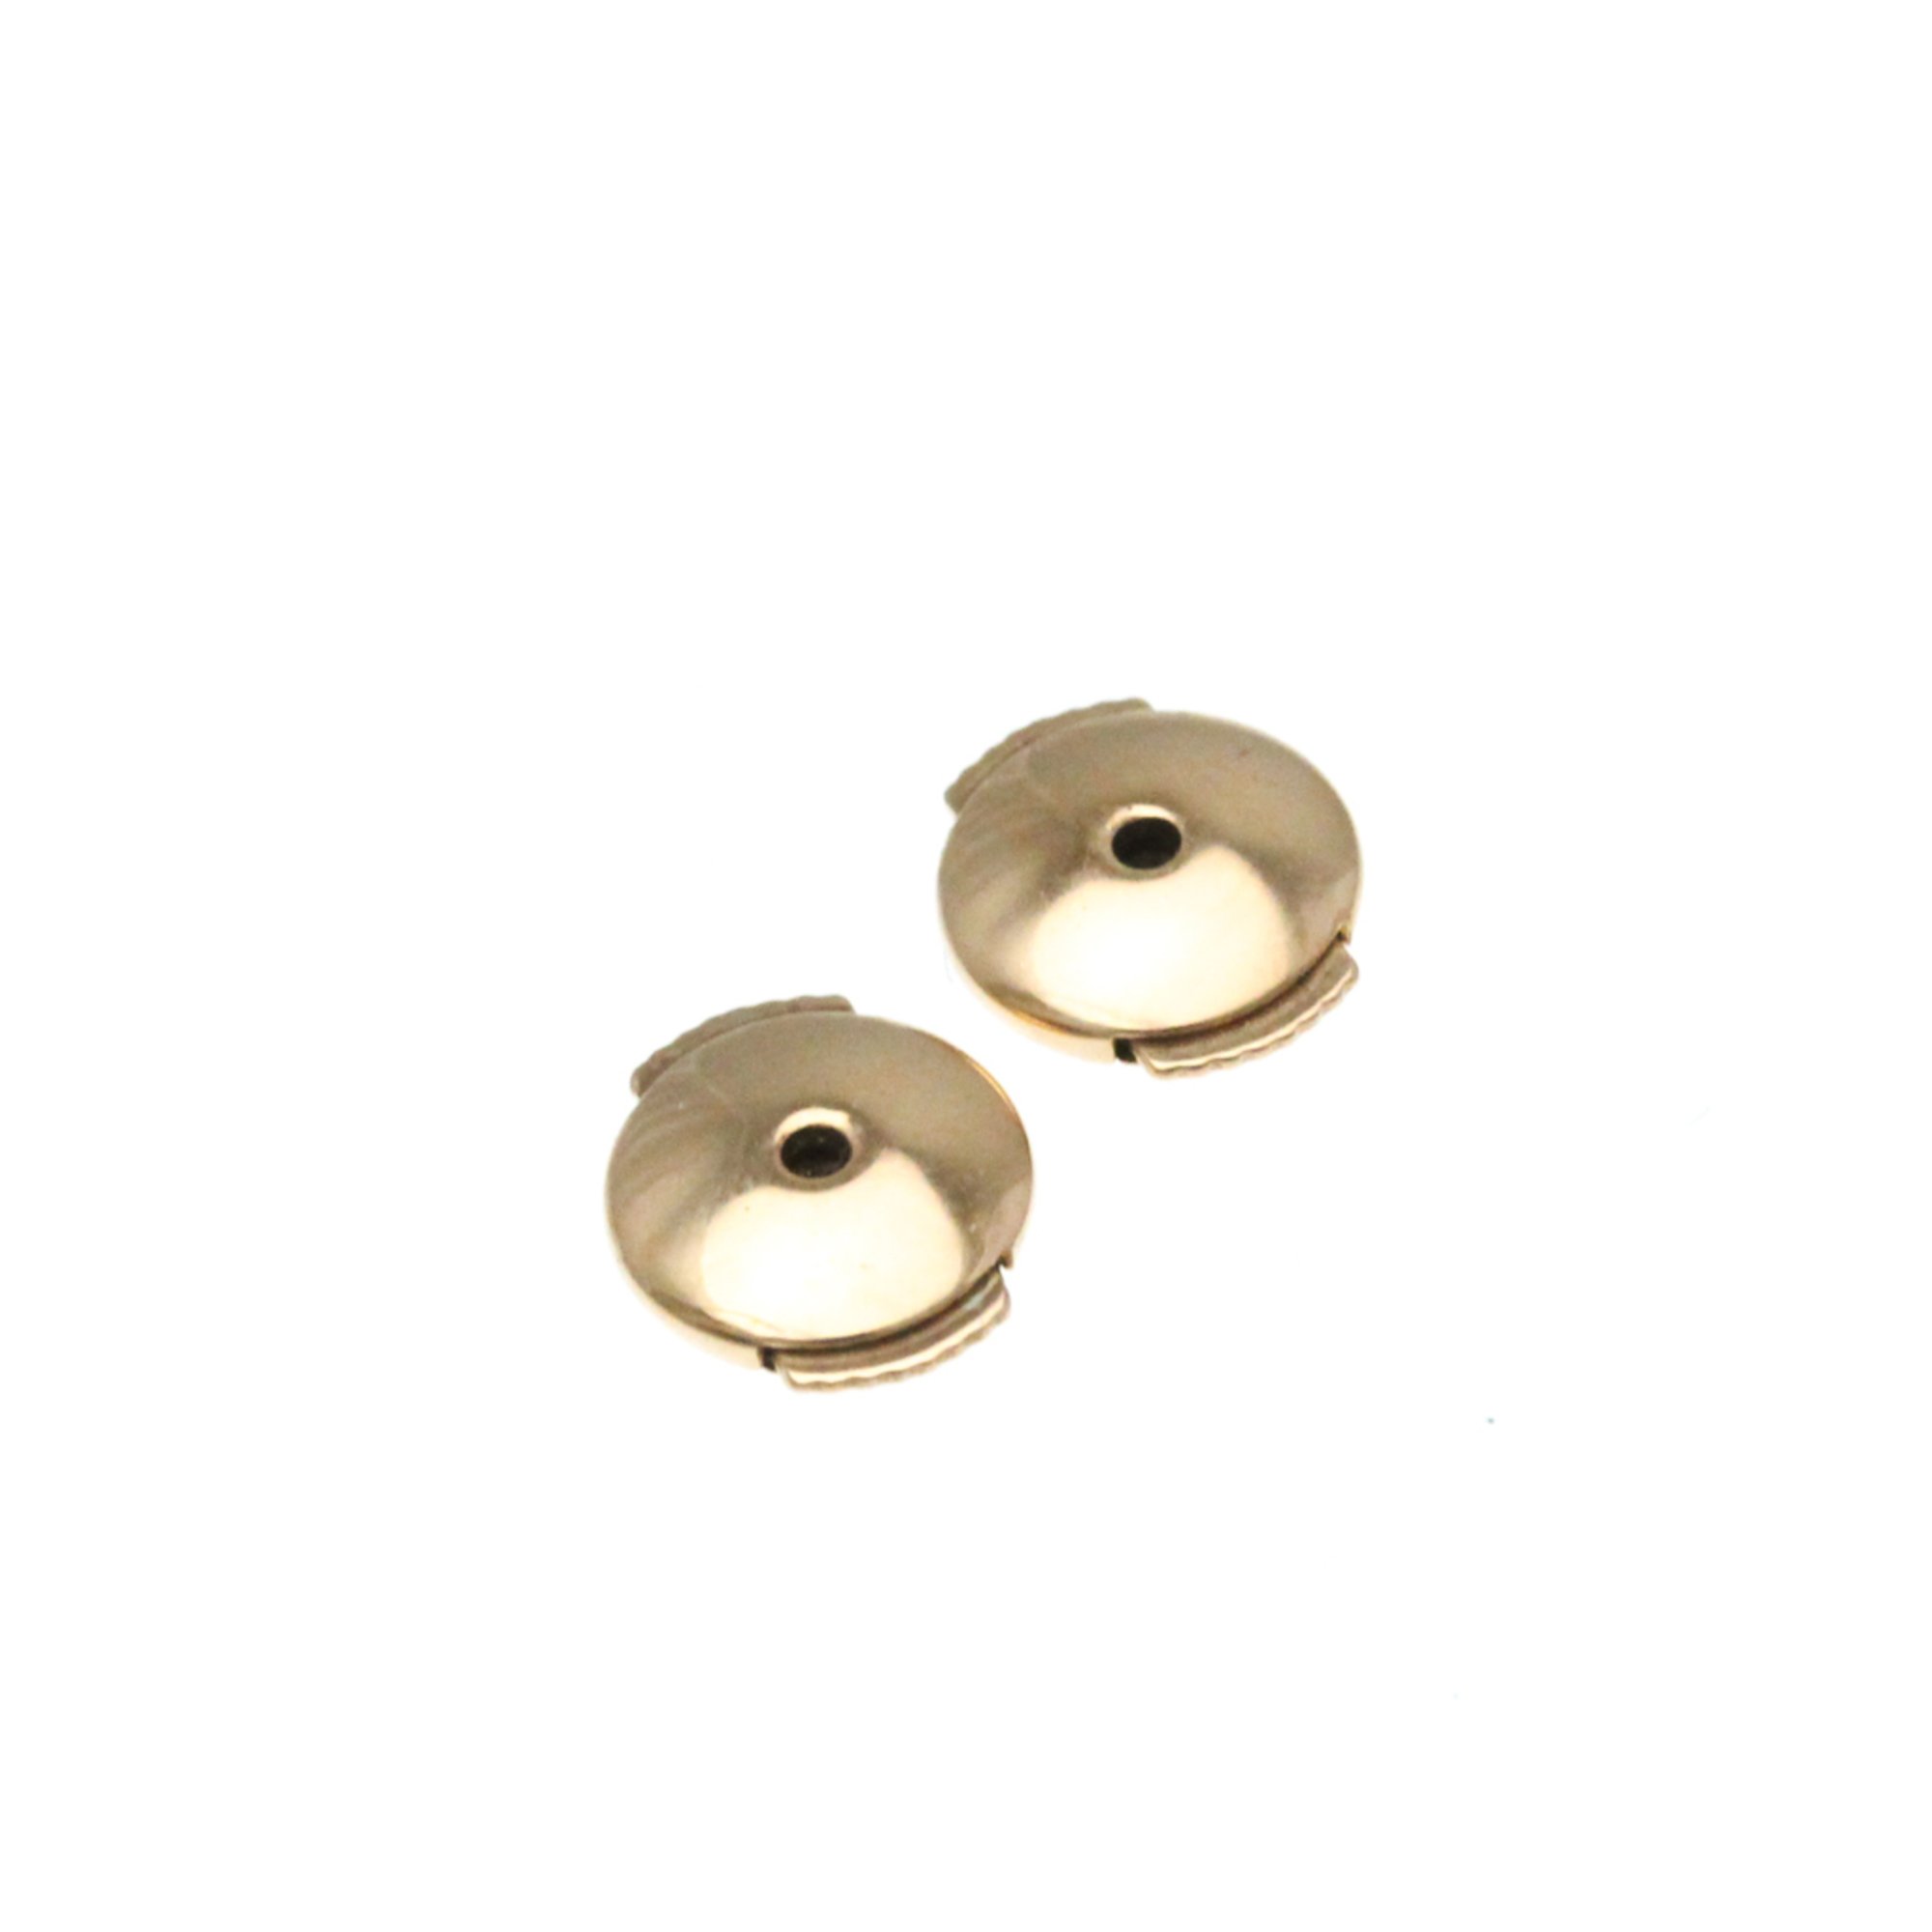 Cartier Mini Love Earrings No Stone Pink Gold (18K) Half Hoop Earrings Pink Gold